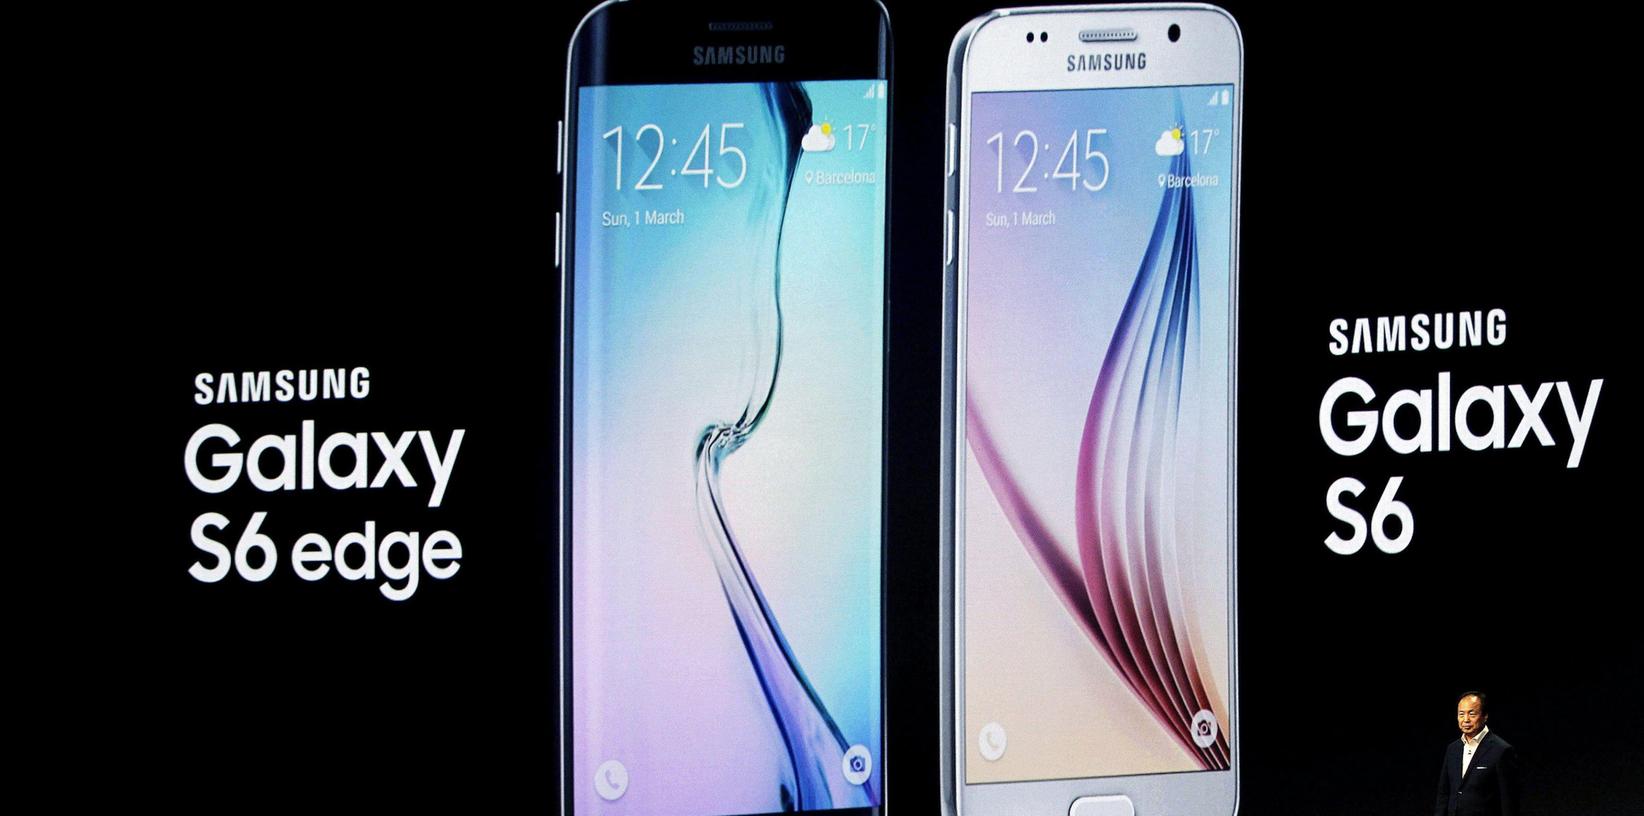 Samsung präsentiert Smartphones Galaxy S6 und S6 edge